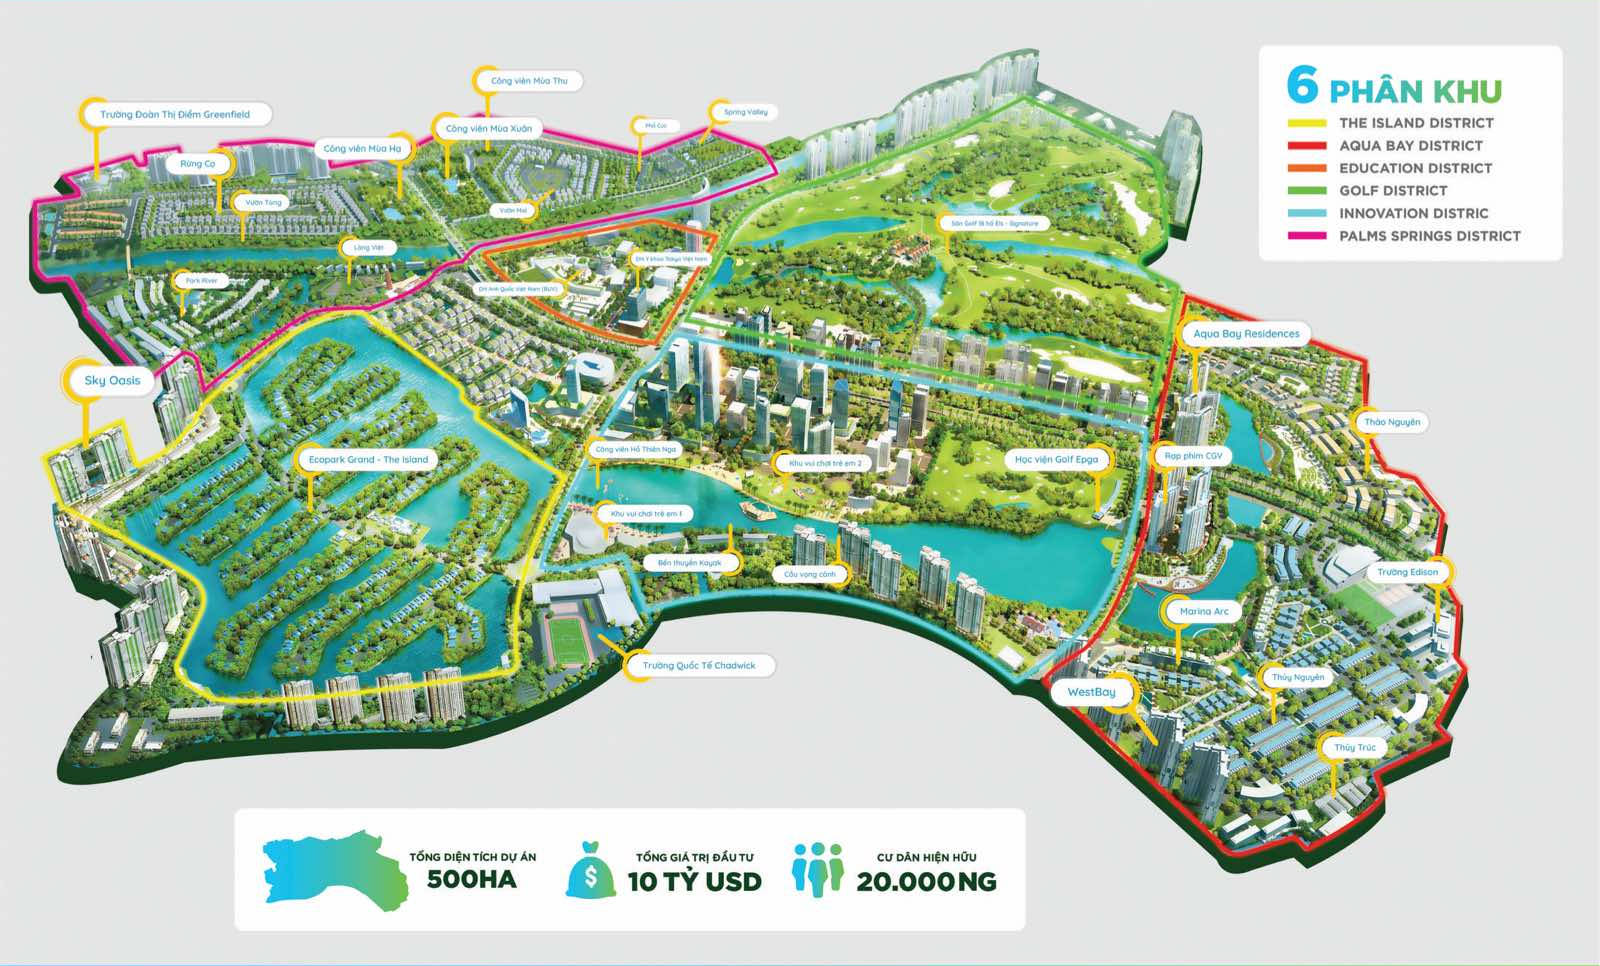 Phân khu Ecopark Hưng Yên mang tới đa dạng sự lựa chọn